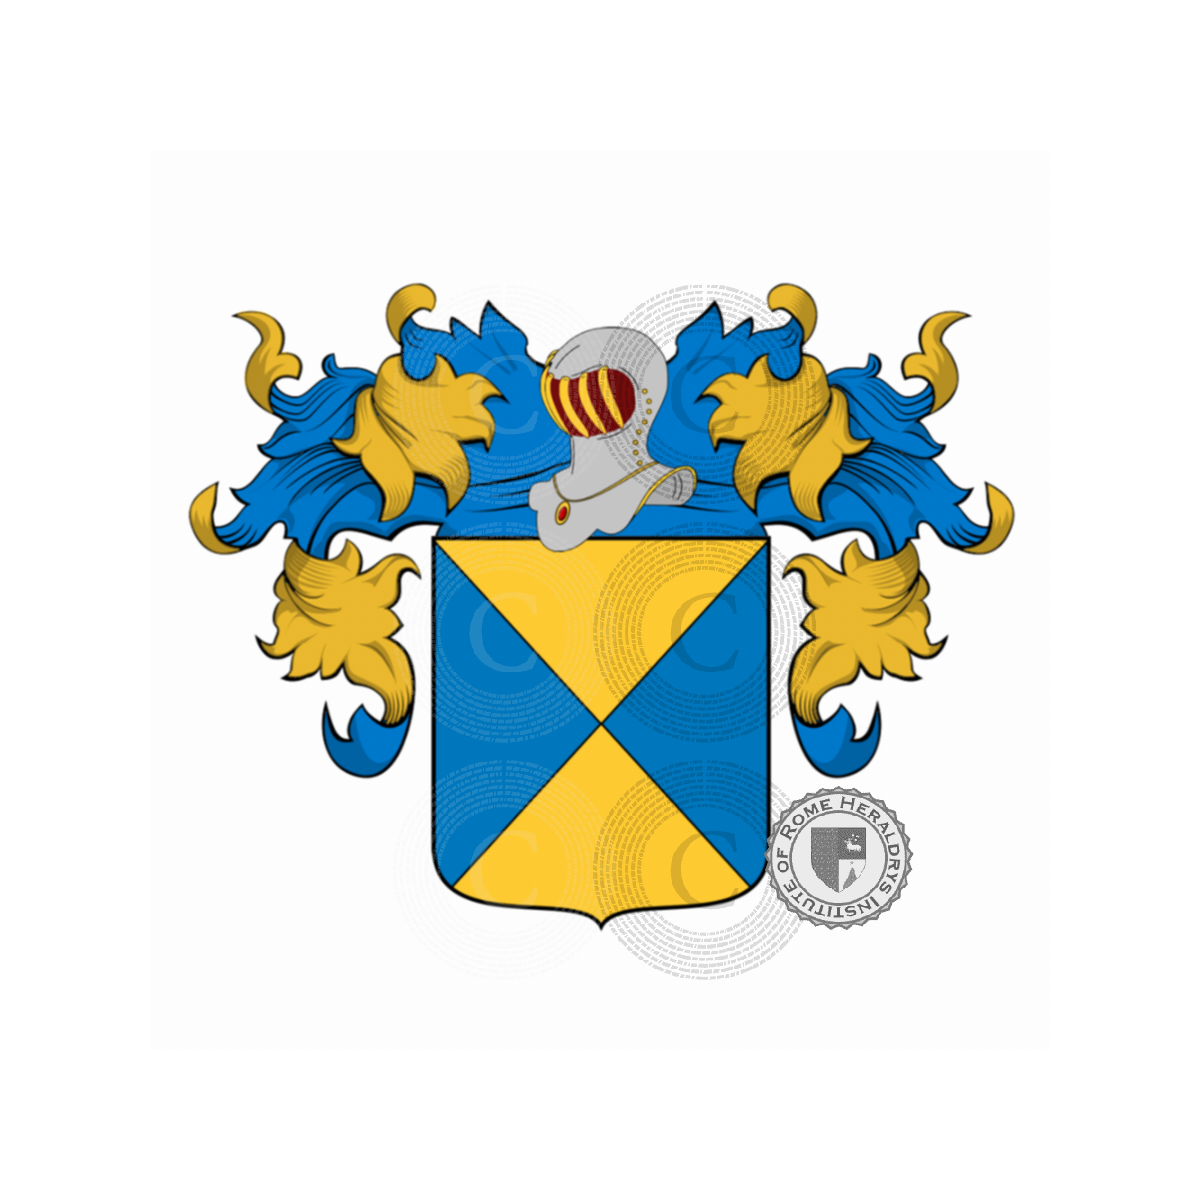 Wappen der FamilieGuidi, Guidi Cerreti,Guidi d'Anterigoli,Guidi da Pratovecchio,Guidi del Mugello,Guidi di Bagno,Guidi di Casavecchia,Magini,Segni Guidi